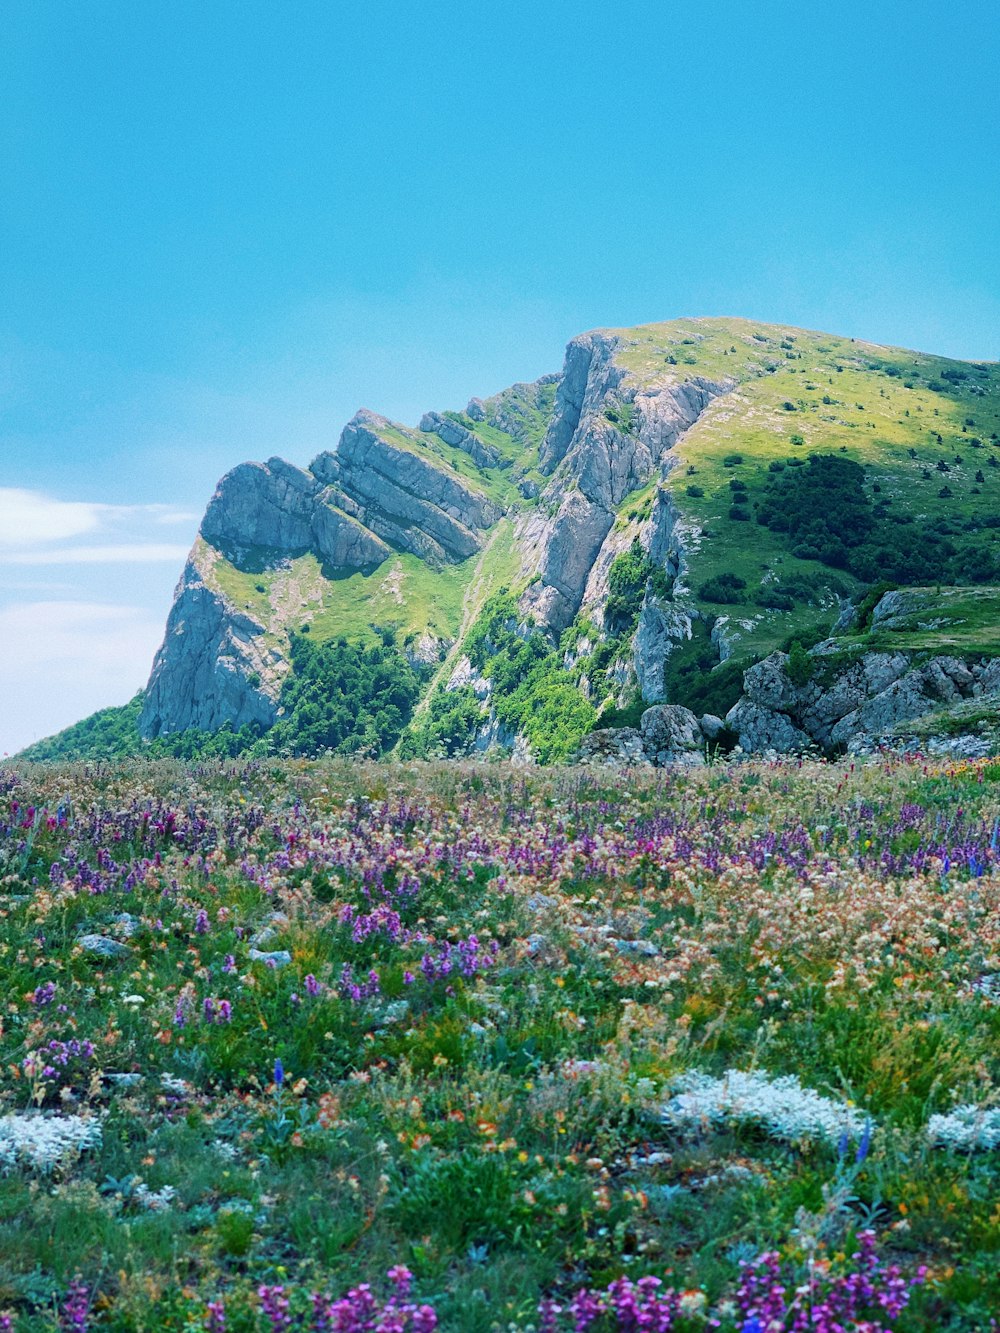 Campo di fiori viola vicino alla montagna verde e grigia sotto il cielo blu durante il giorno